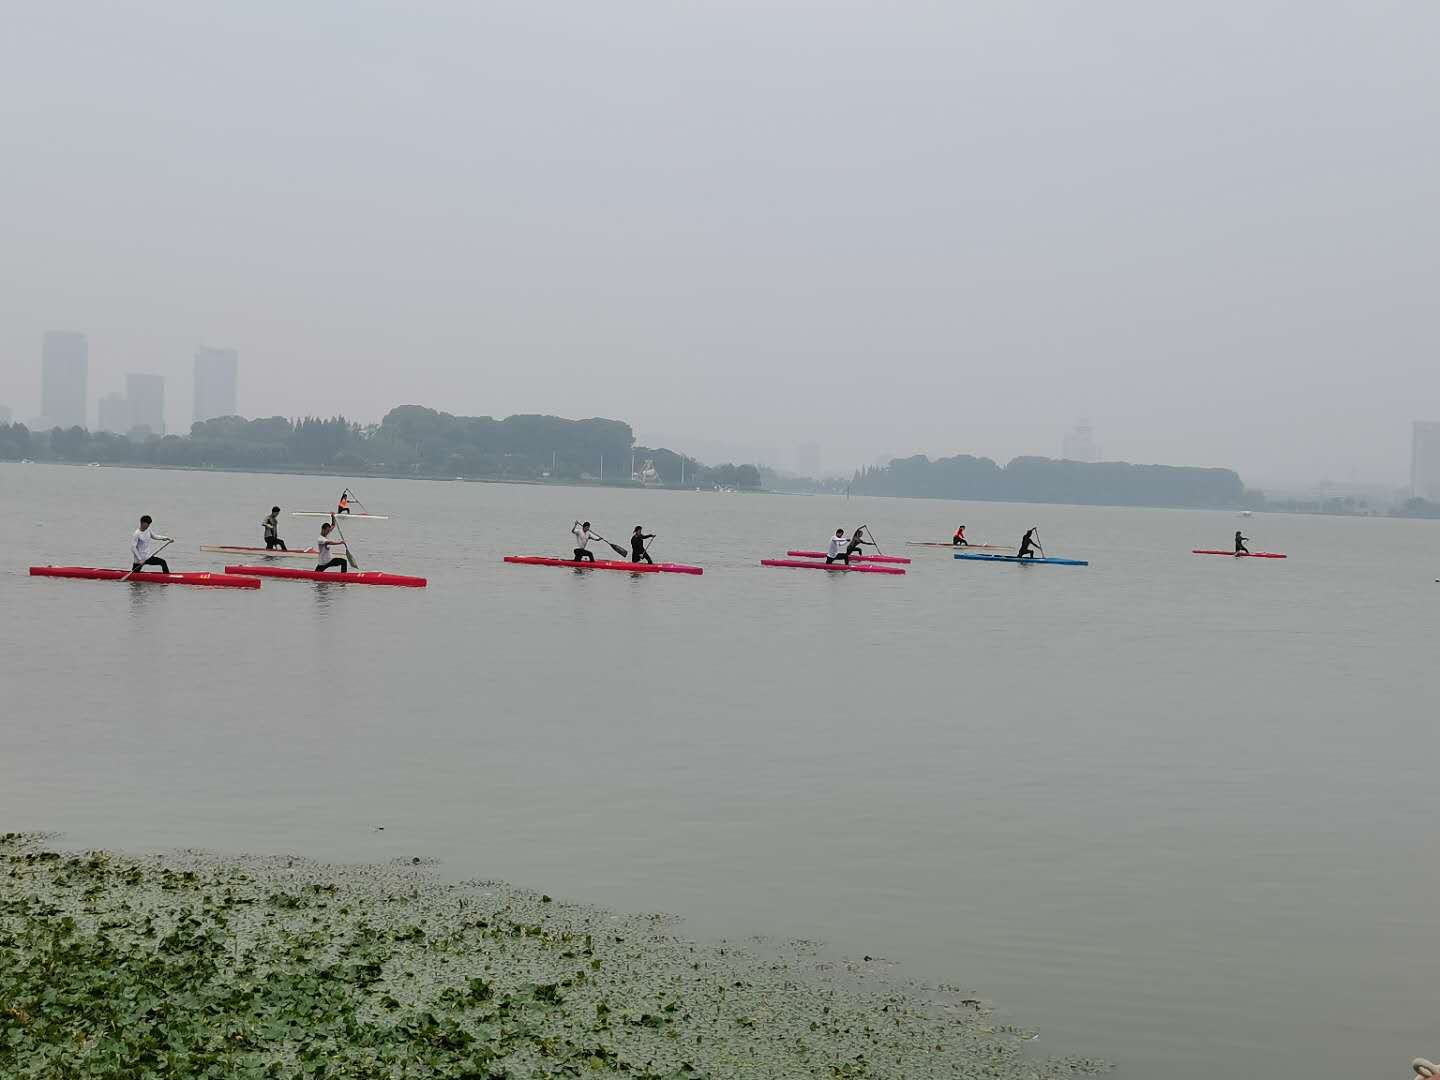 者再正常不过,南京市水上运动学校女子皮划艇组主教练王凤告诉记者